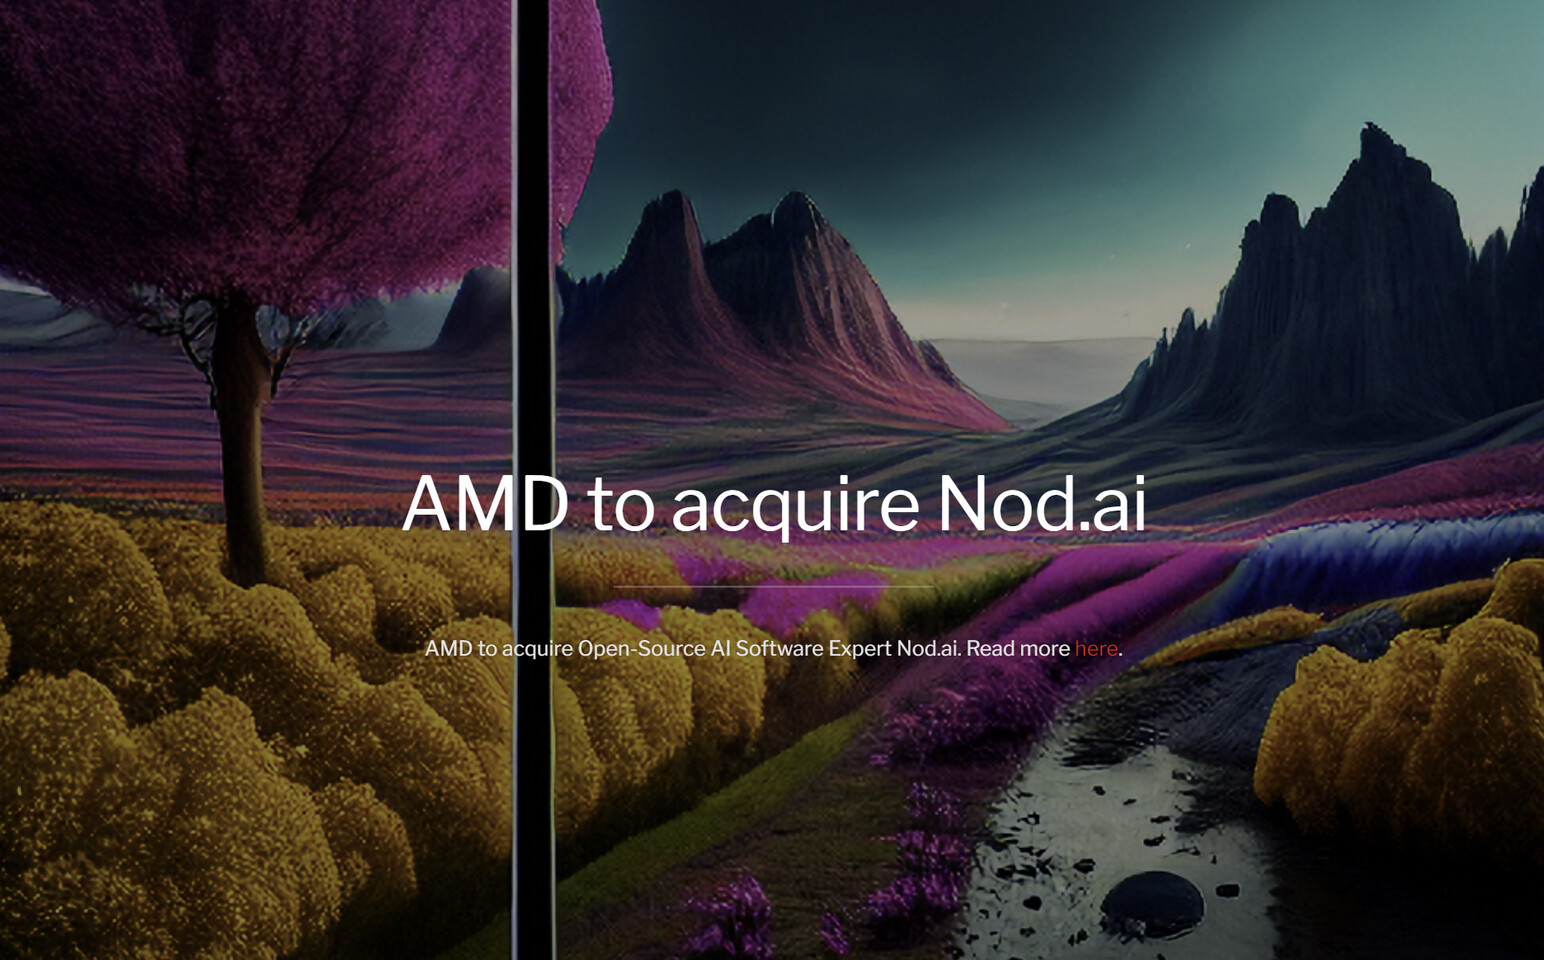 AMD anunció la compra de Nod.ai